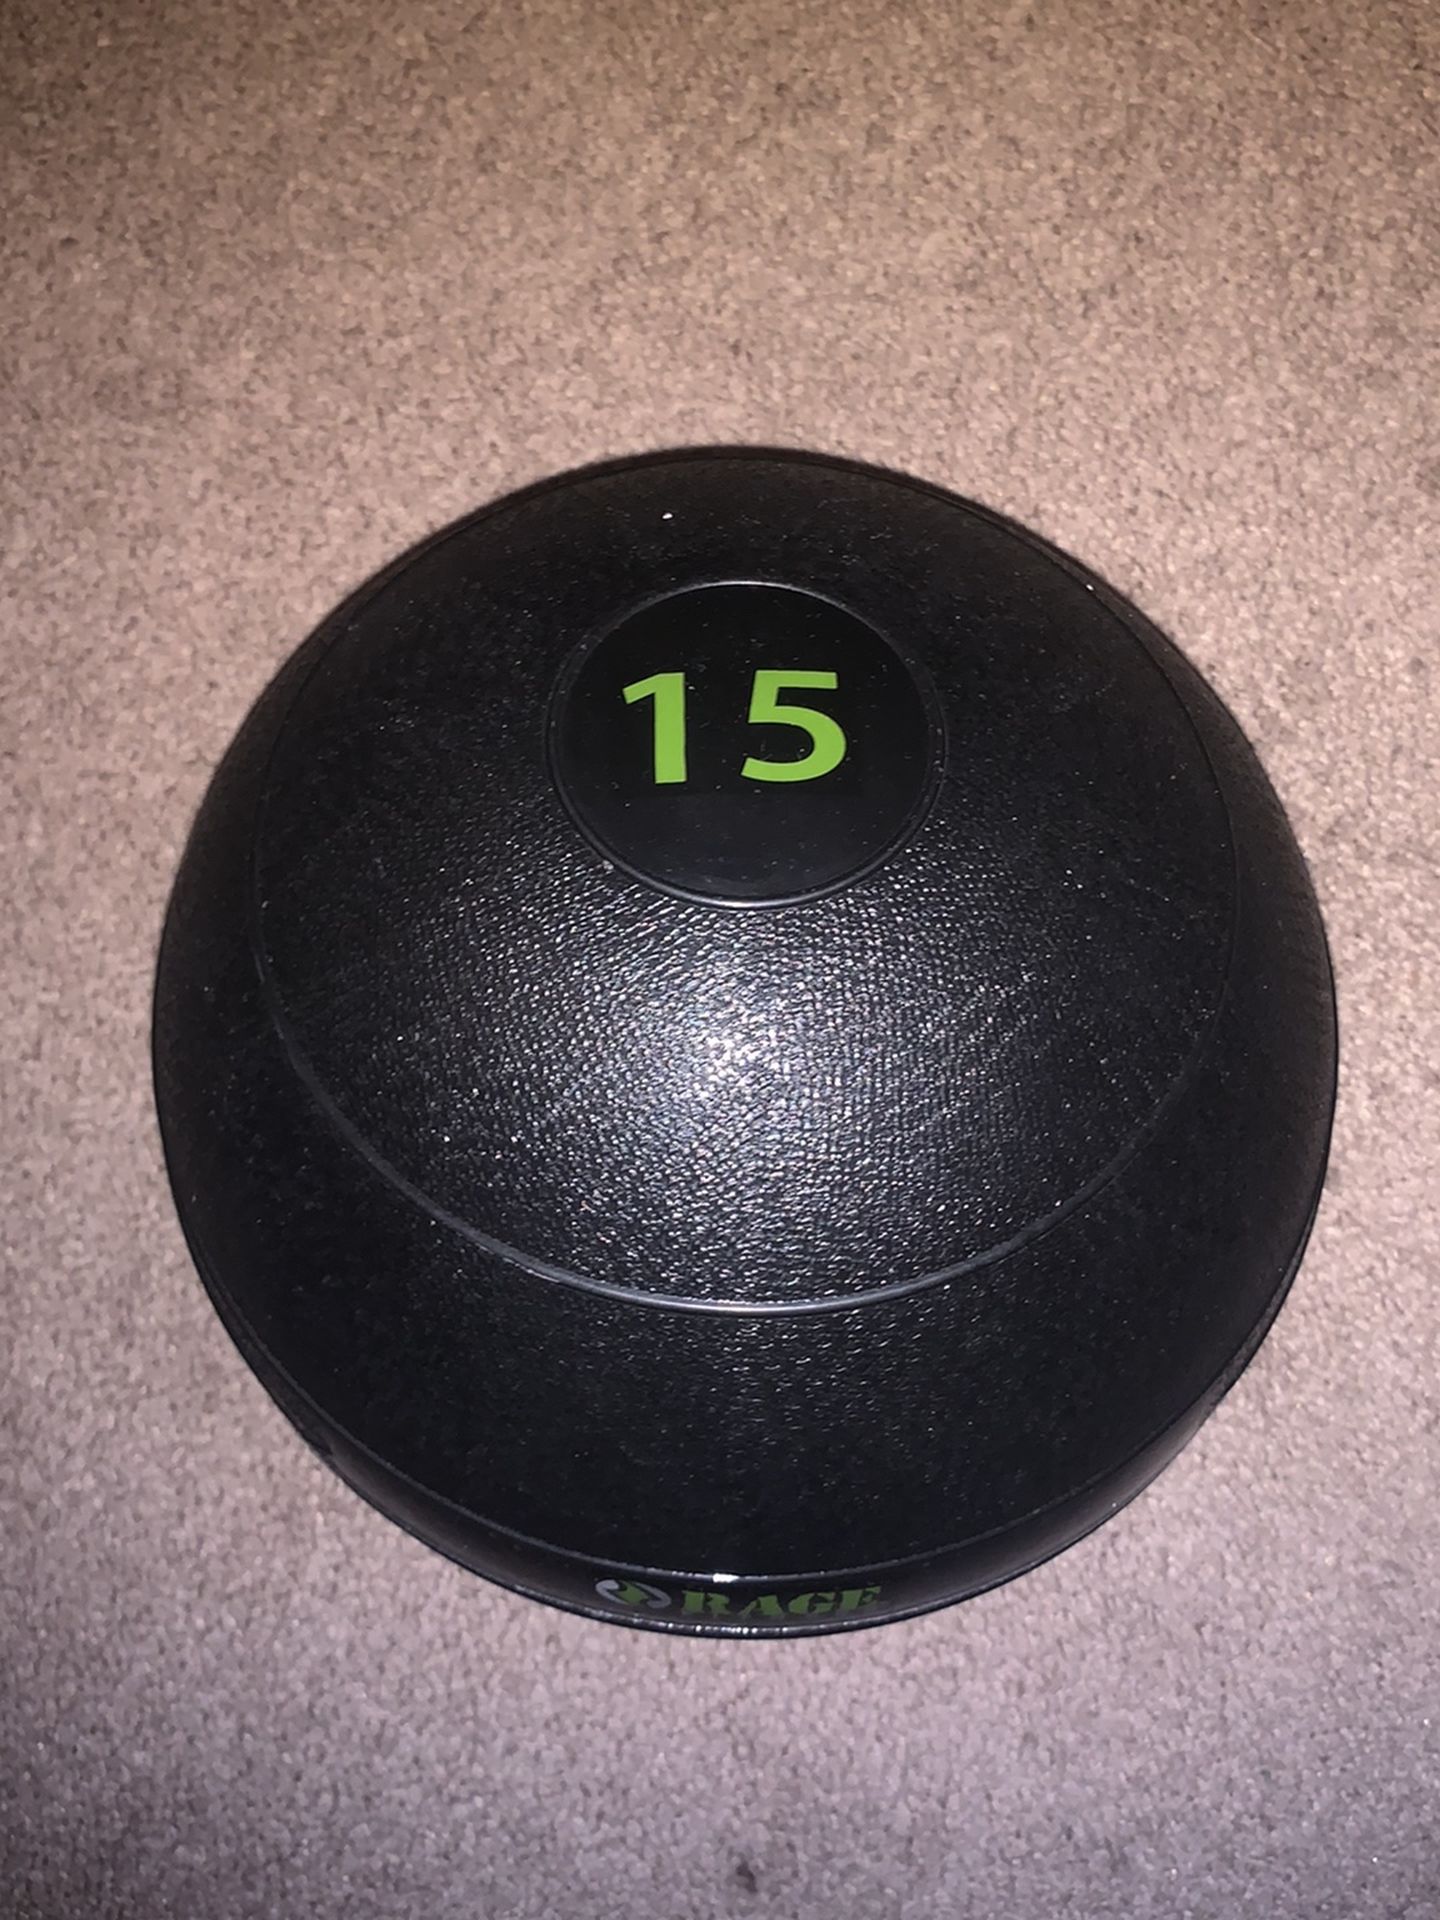 15lb Medicine Ball